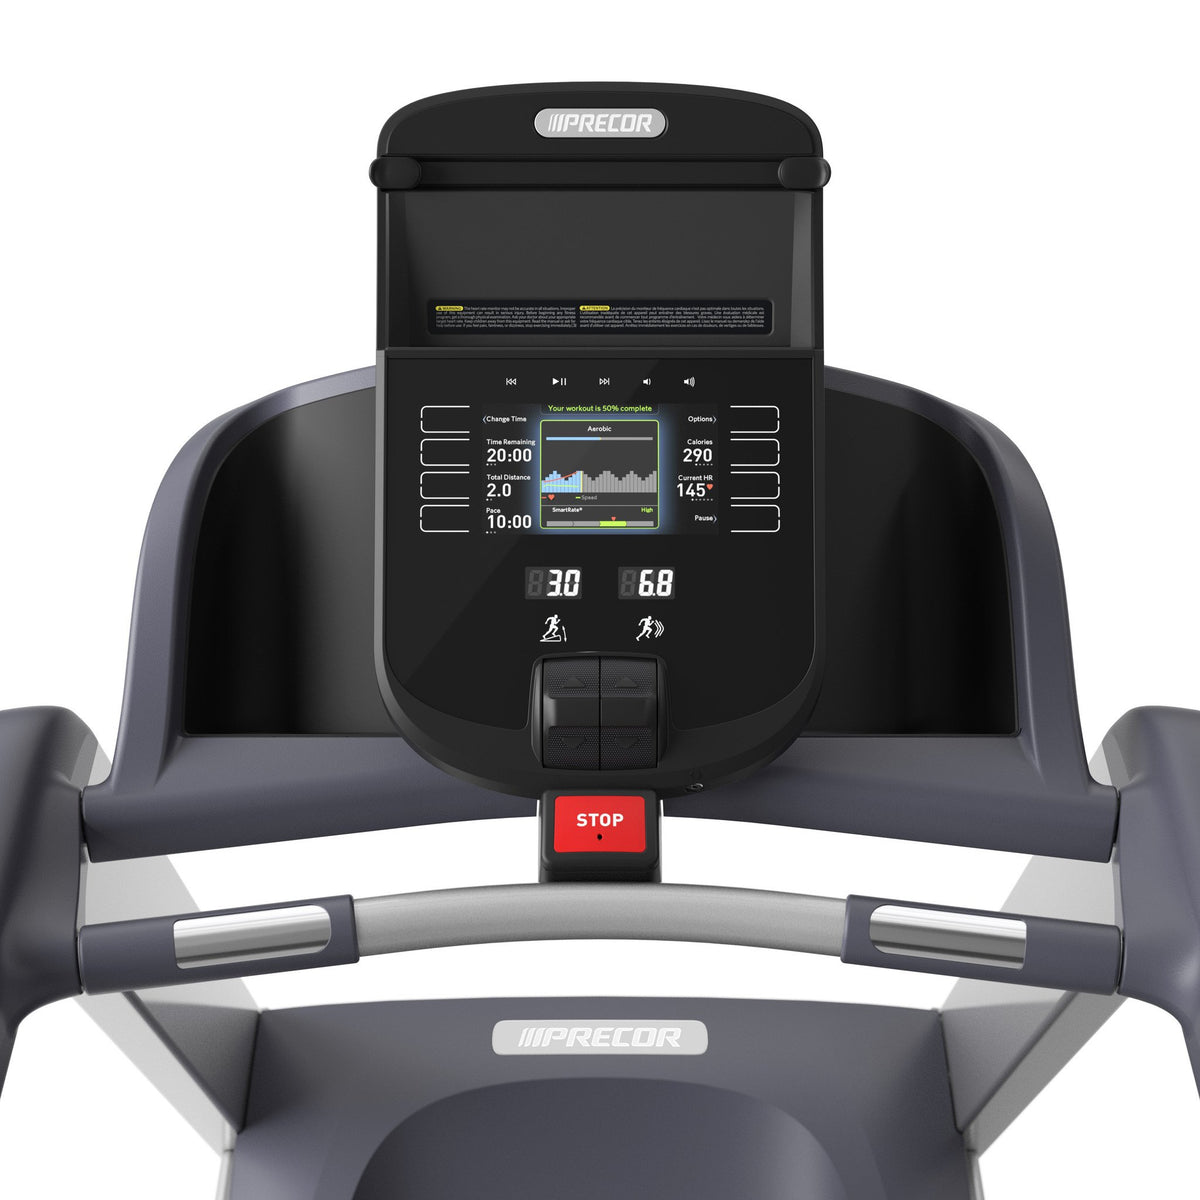 Precor TRM445 Treadmill